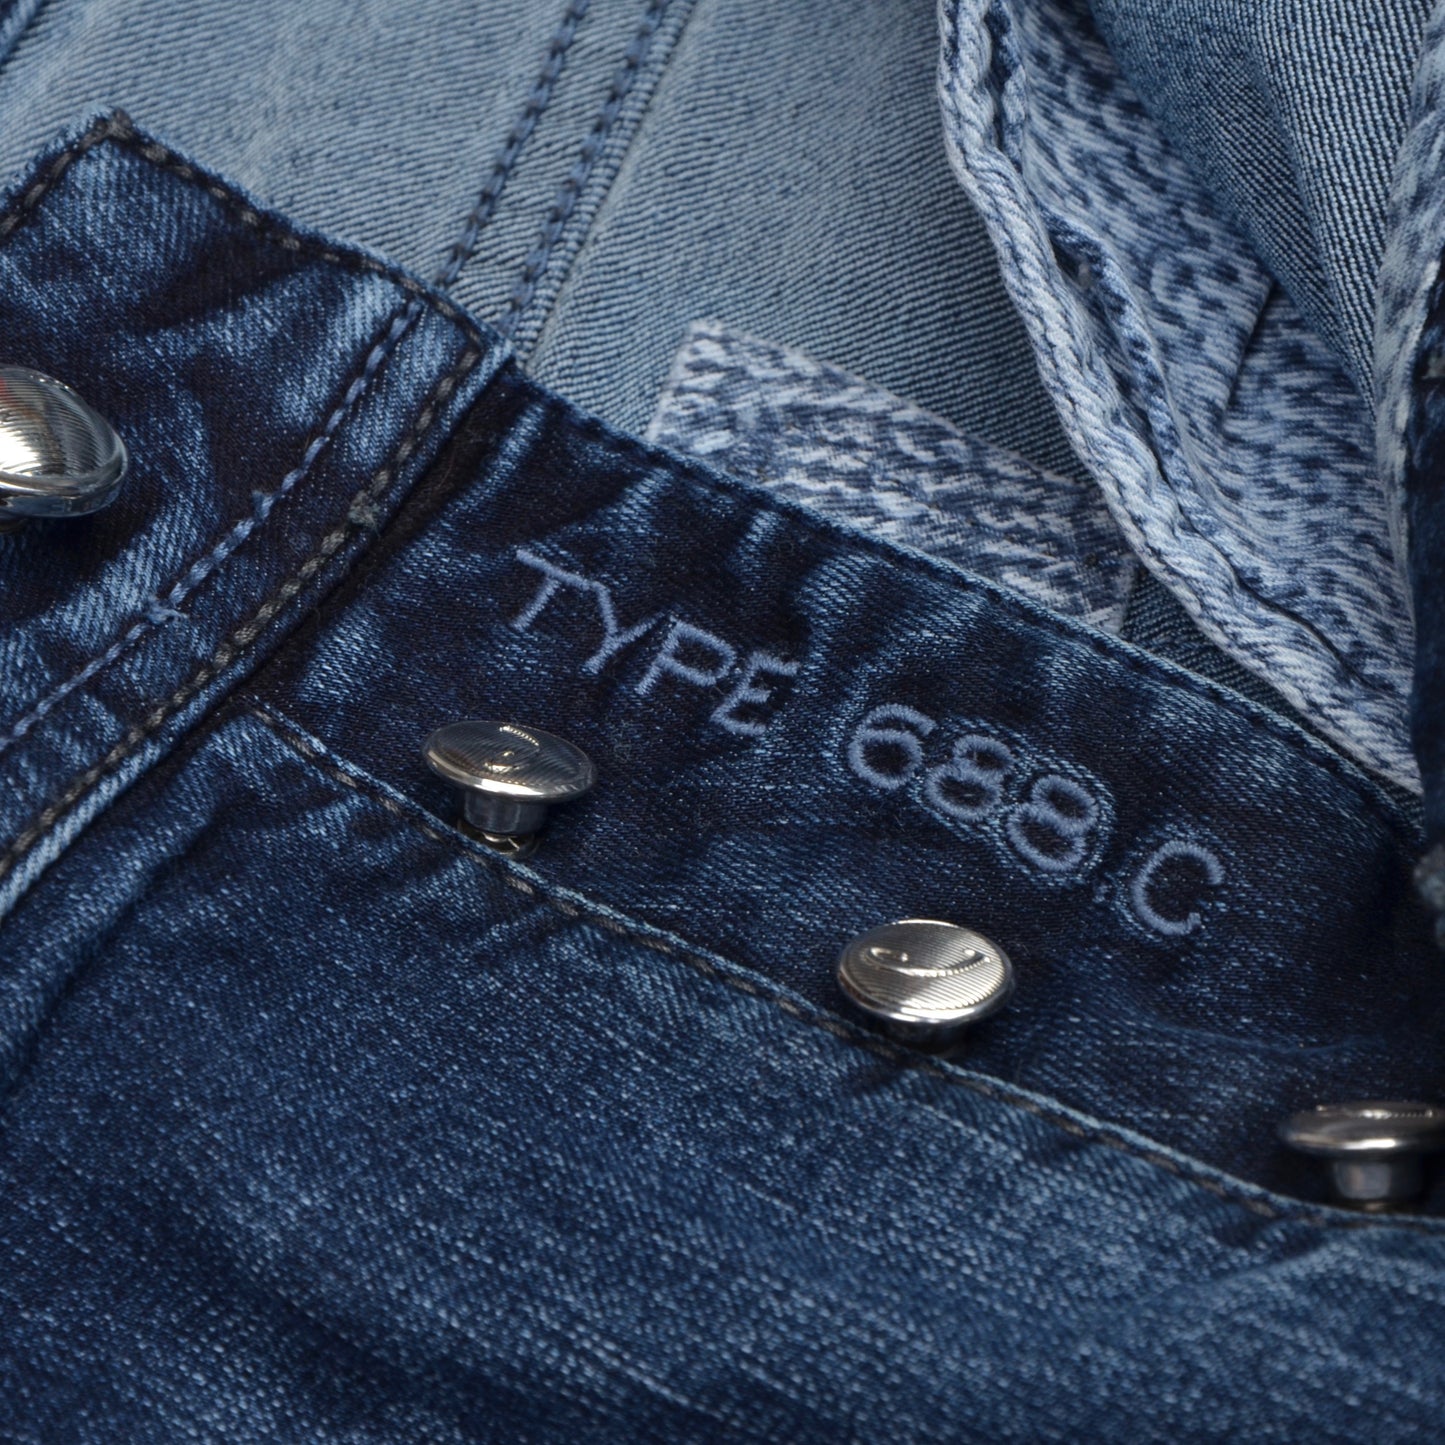 Jacob Cohen Jeans Model 688 C Size W36 Slim